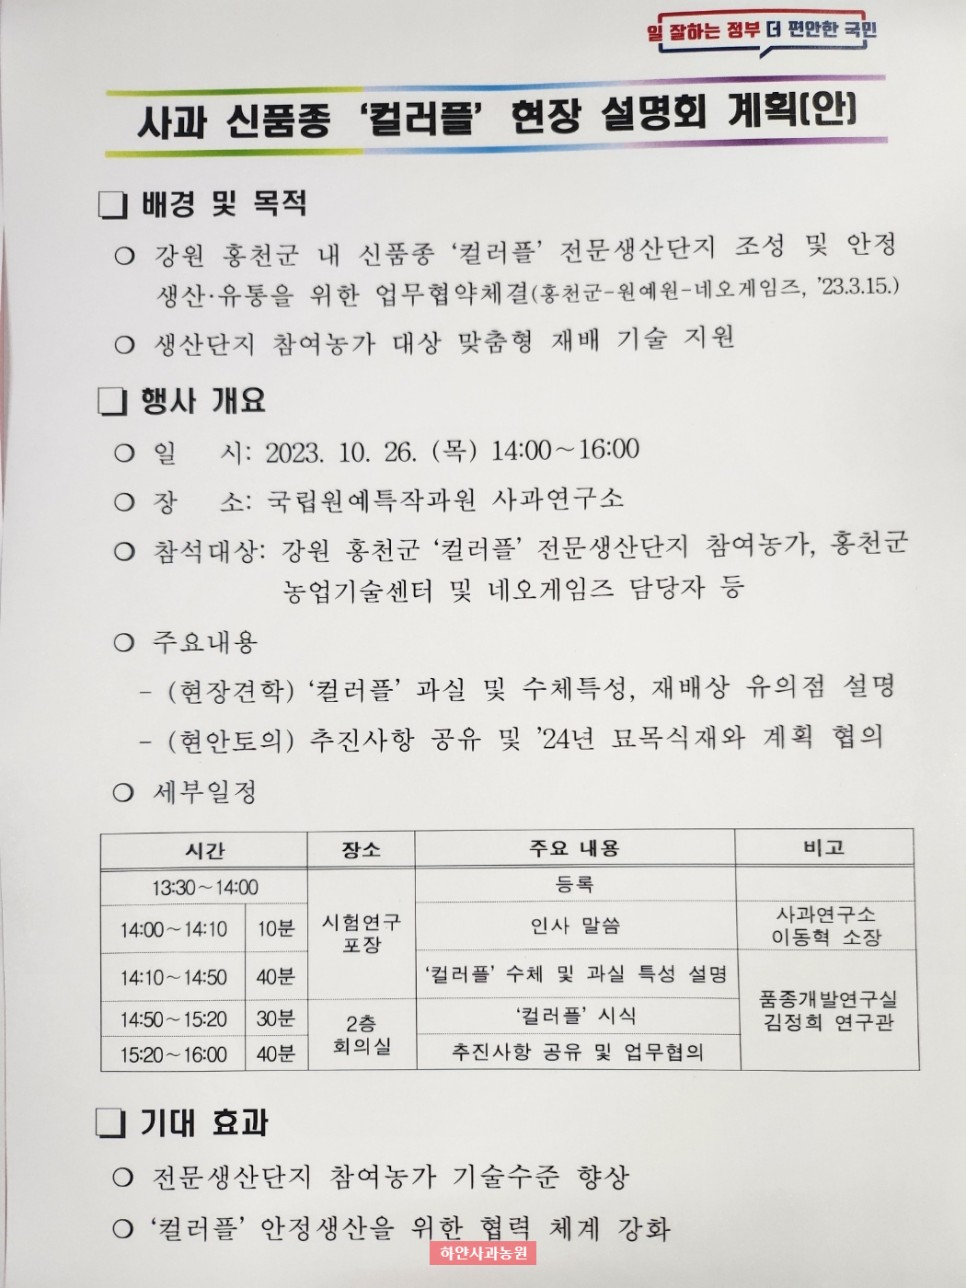 홍천 사과 신품종 컬러플 현장 설명회(사과연구소, 네오게임즈)